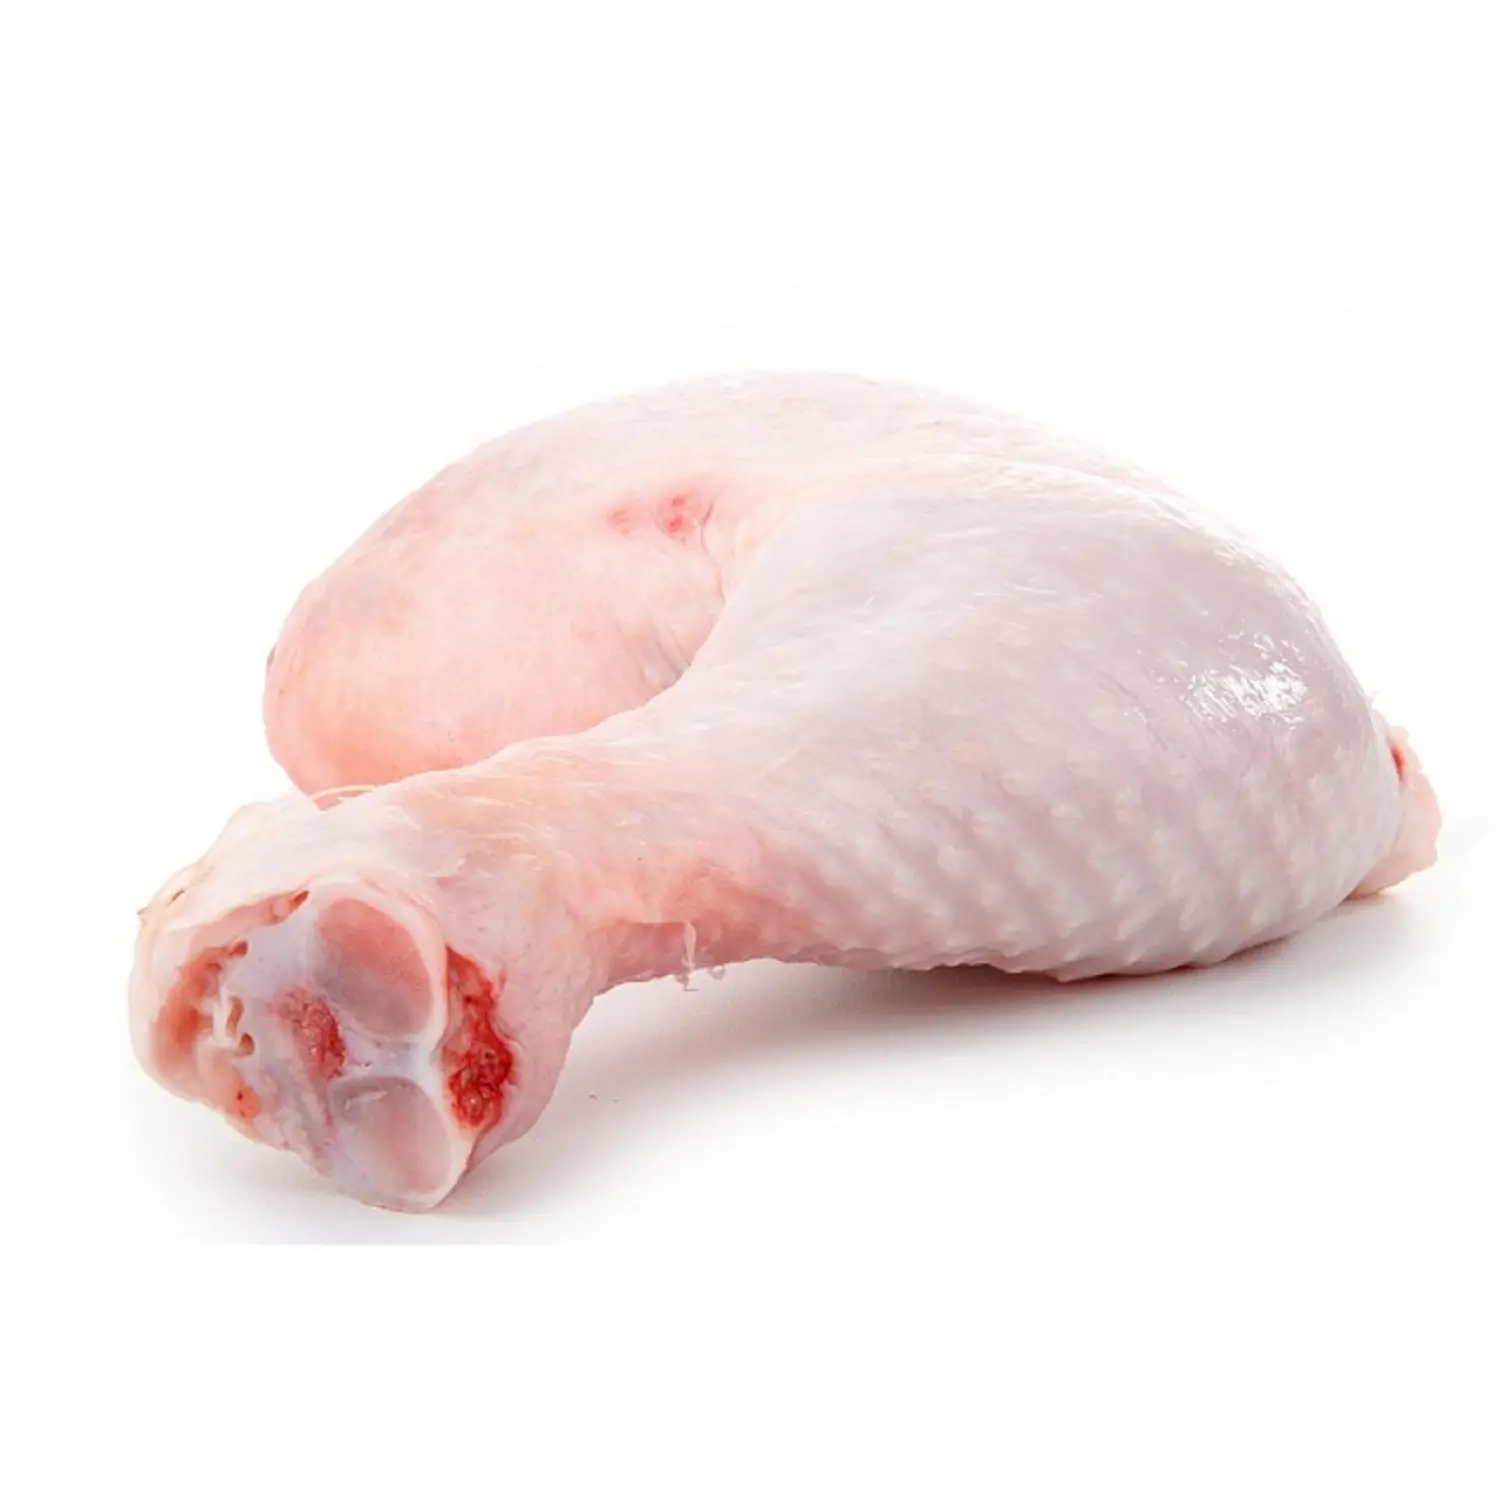 Zampe di pollo congelate fresche/coscia di pollo/coscia di pollo a quarto congelato prezzo economico